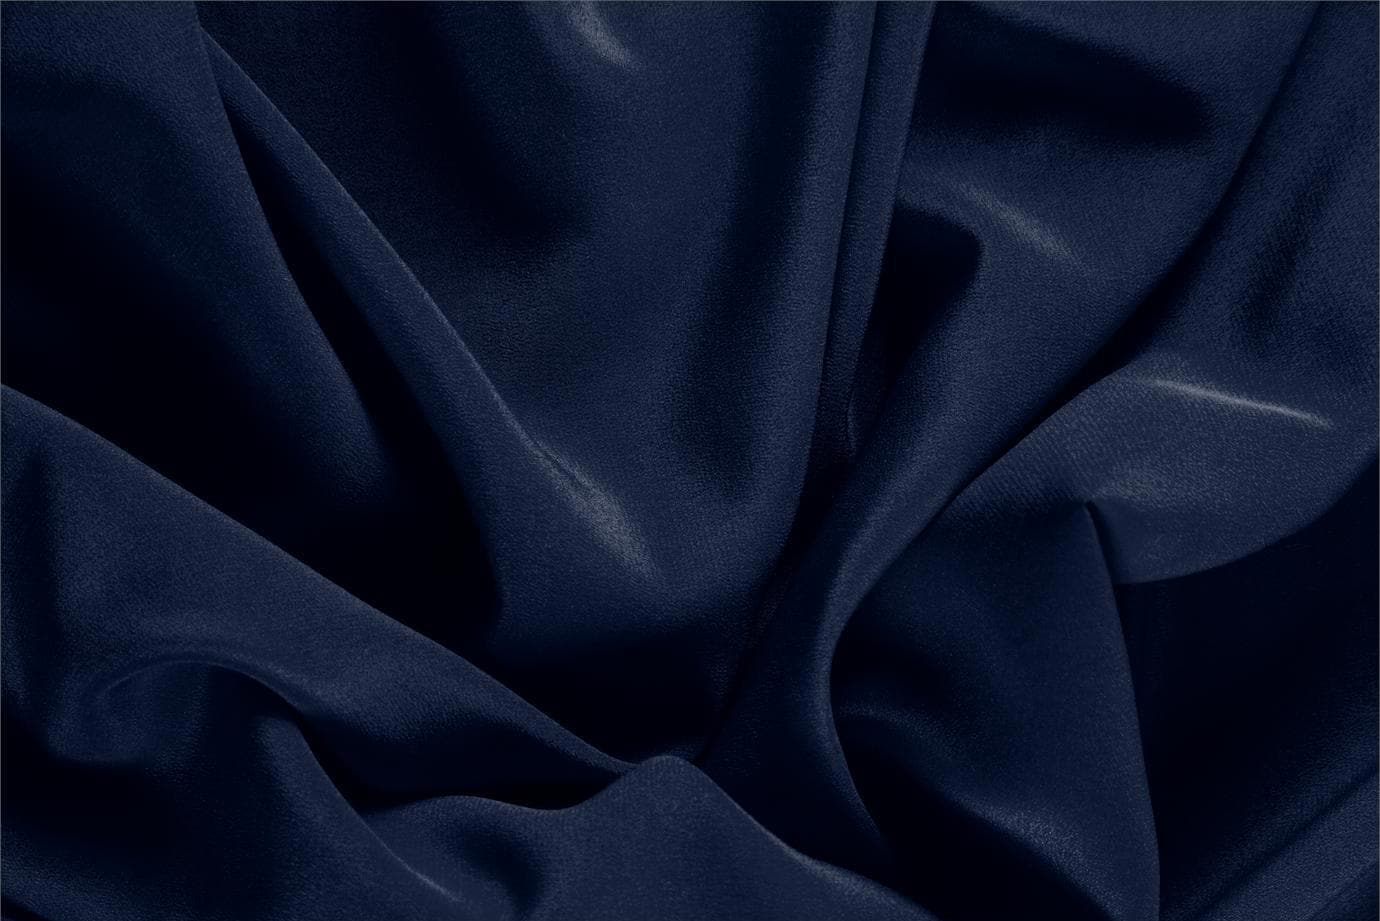 Tissu Crêpe de Chine Bleu navy en Soie pour vêtements